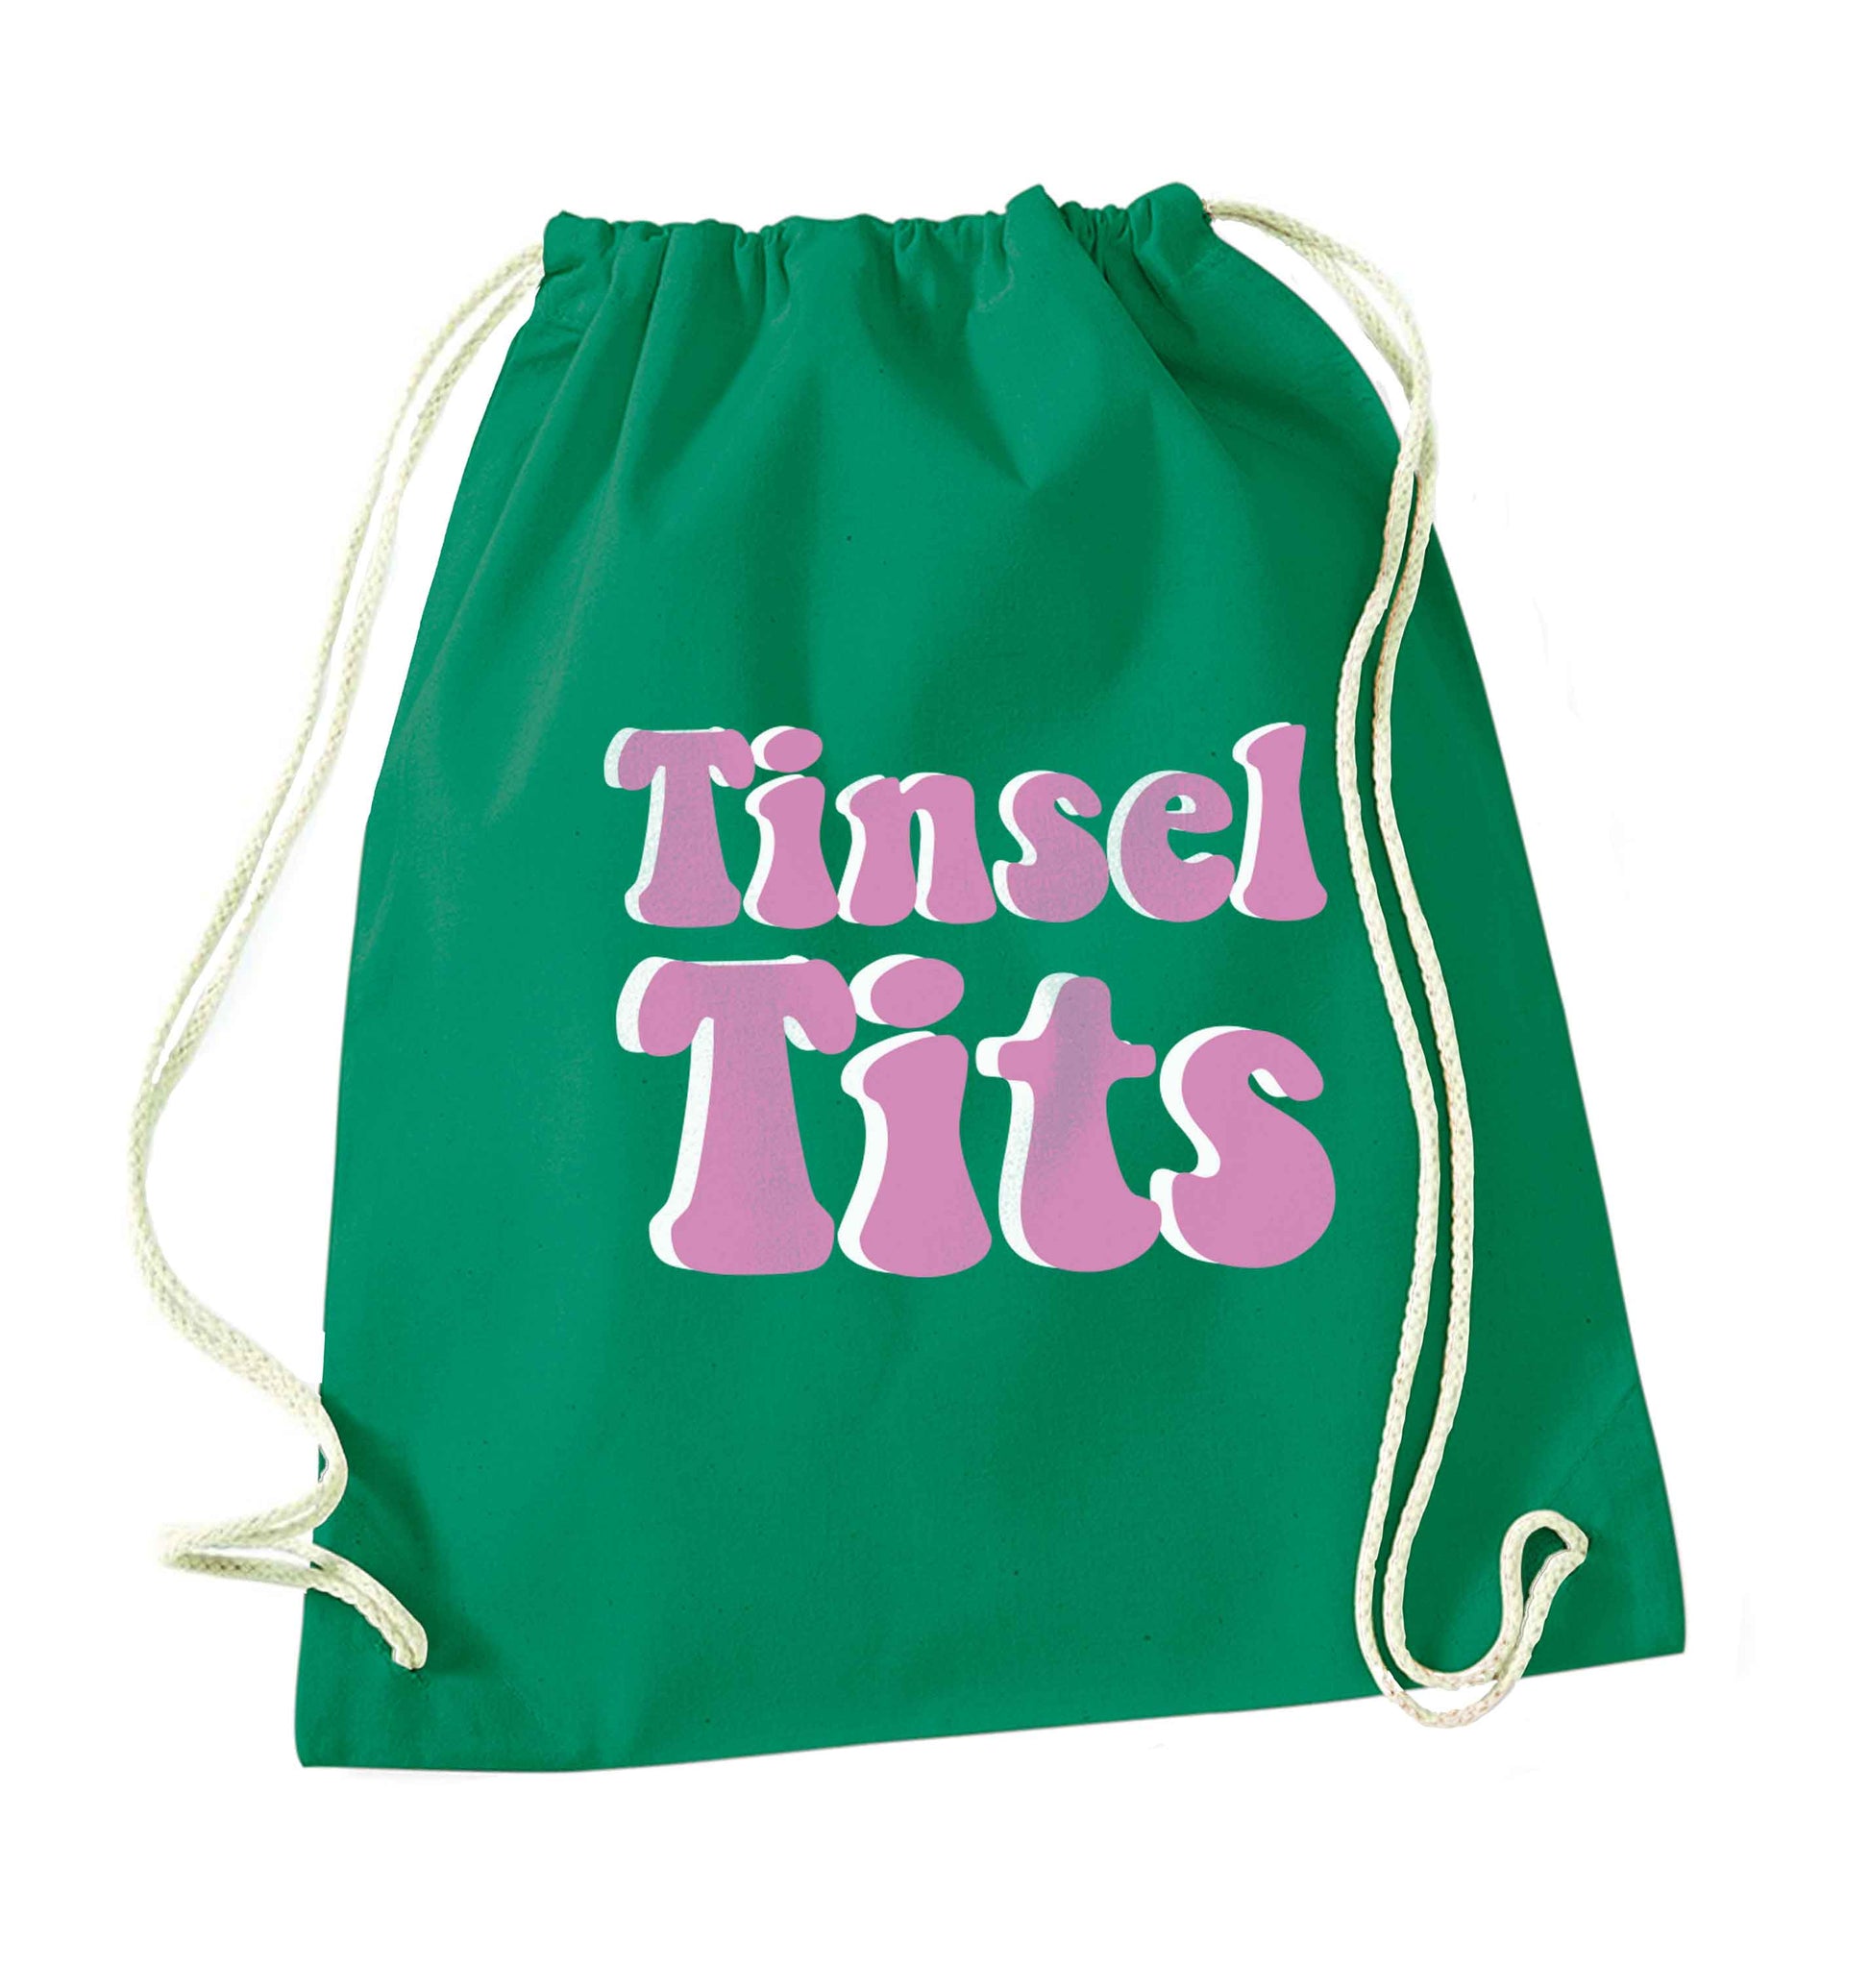 Tinsel tits green drawstring bag